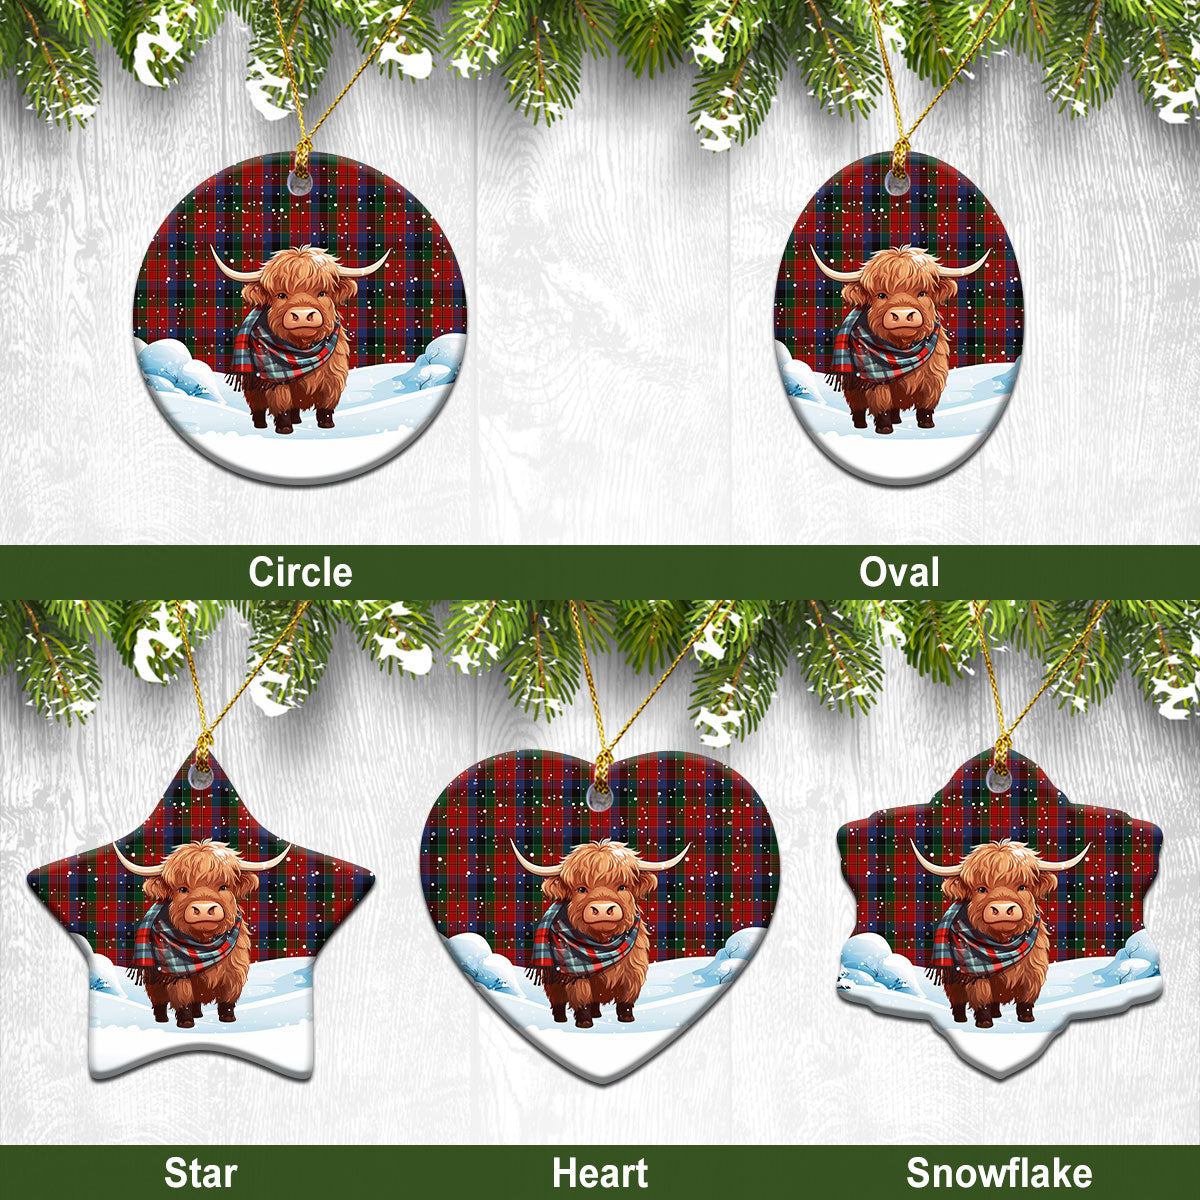 Leith Tartan Christmas Ceramic Ornament - Highland Cows Snow Style